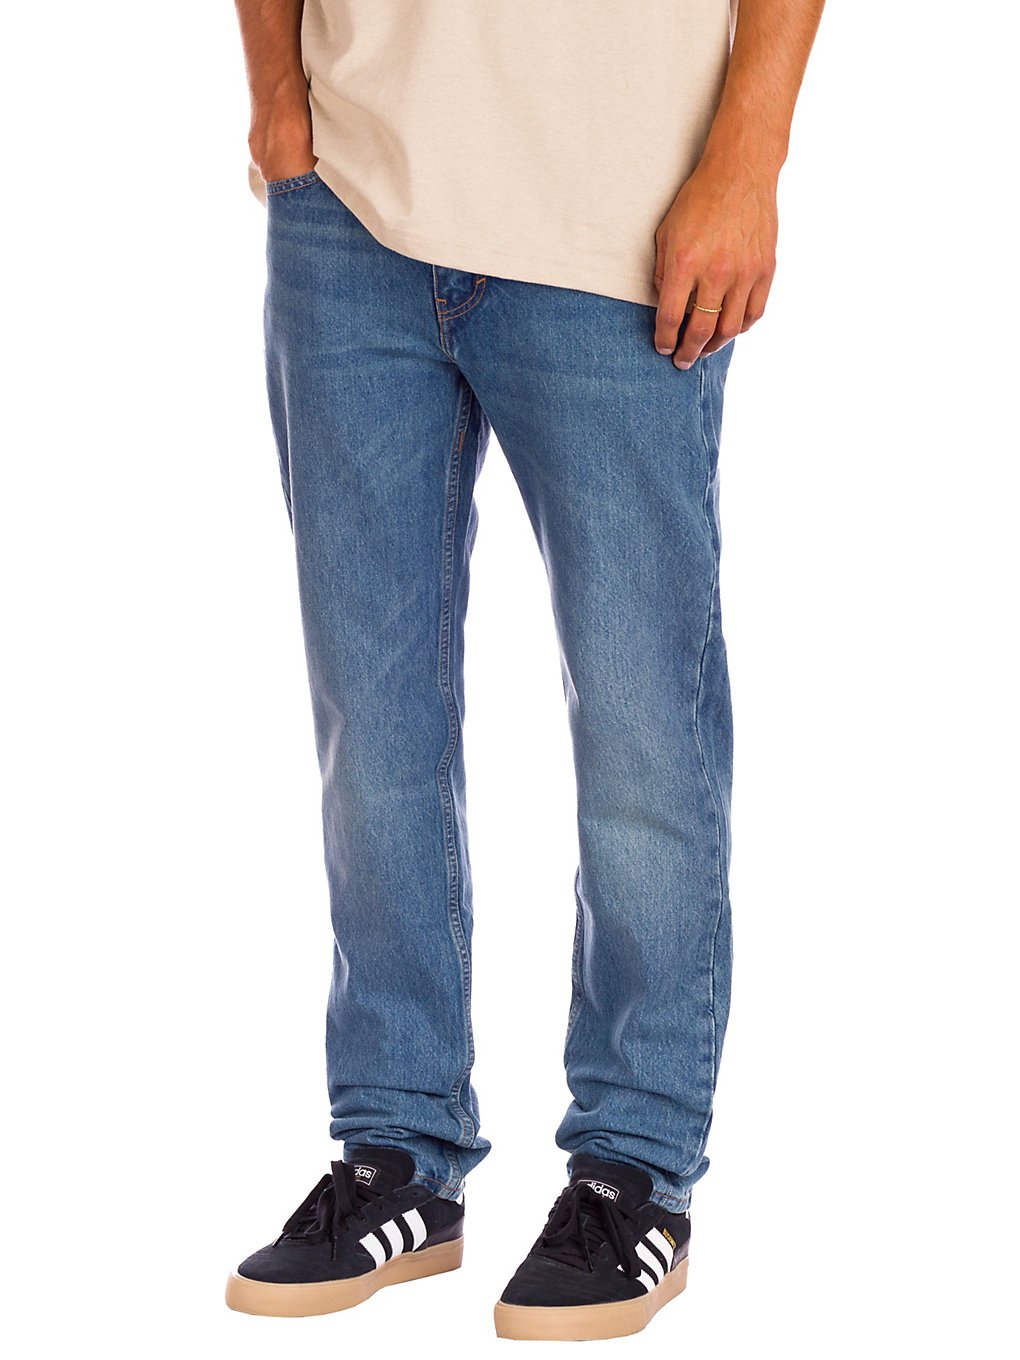 Artikel klicken und genauer betrachten! - Die Levi's® Skate 511® Slim 5 Pocket Jeans kommen mit einem modernen Slim Fit. Durch den hohen Stretchanteil bietet sie viel Bewegungsfreiheit für deine Skate Sessions. Bei Levi's® Skateboarding™ geht es um mehr als nur darum, langlebige Kleidung für Skateboarder zu schaffen. Es geht darum, großartige Gemeinschaften zu unterstützen. | im Online Shop kaufen